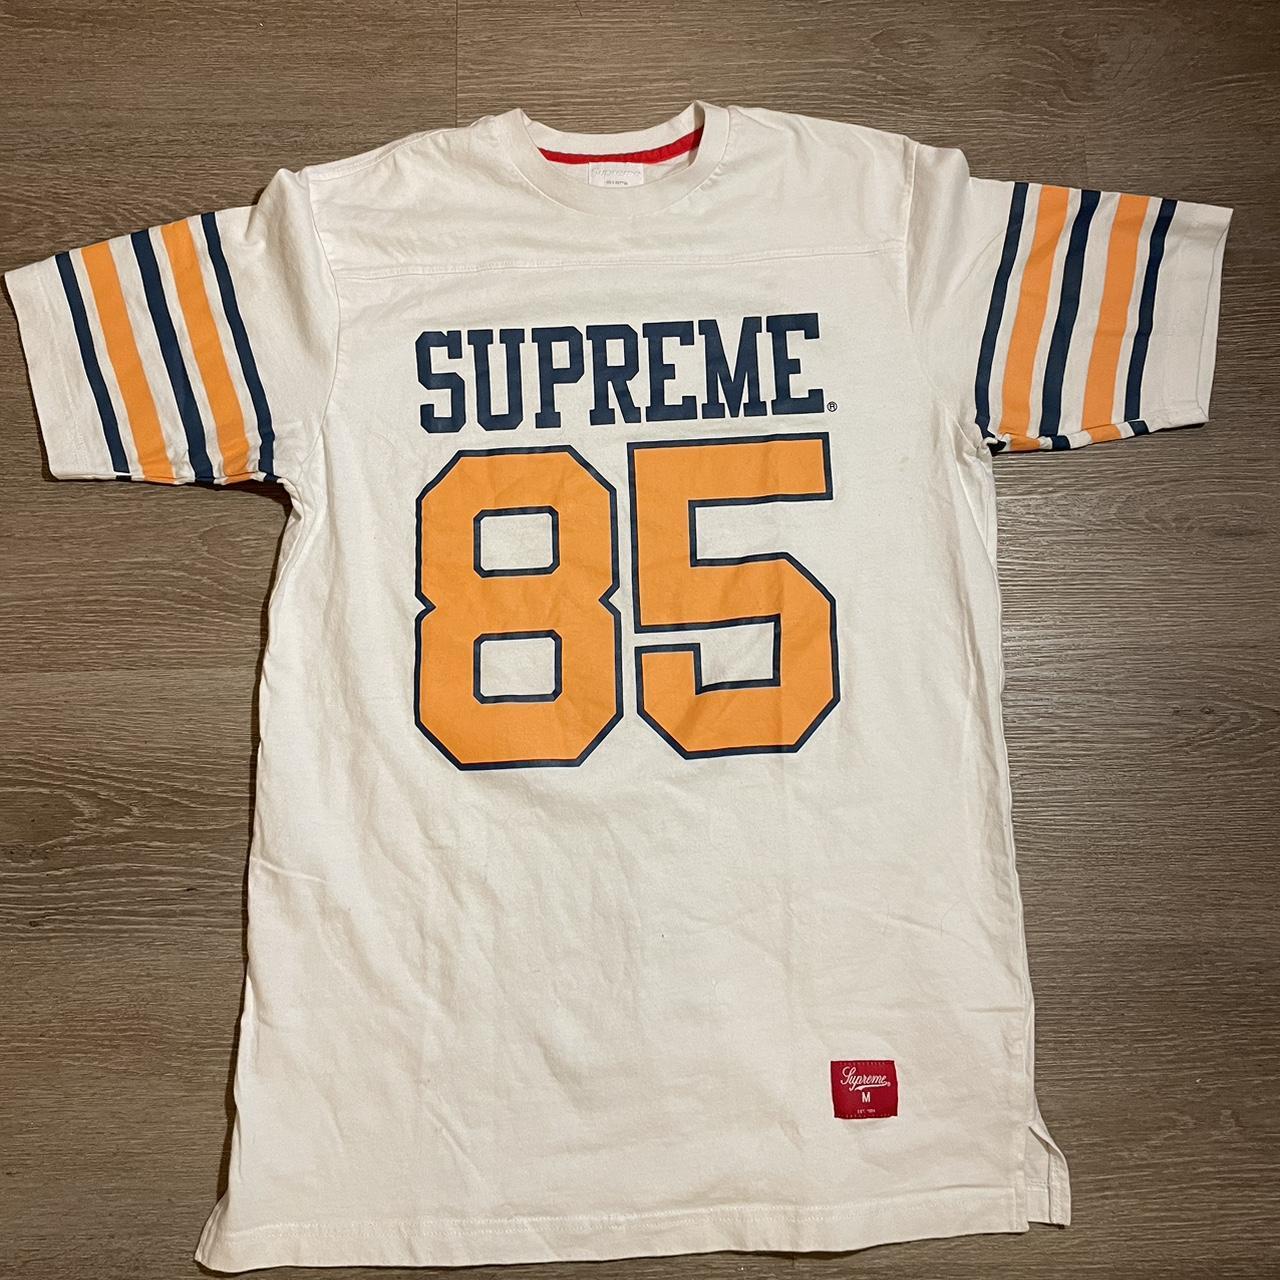 Supreme Gauchos 53 Jersey (Men's M)